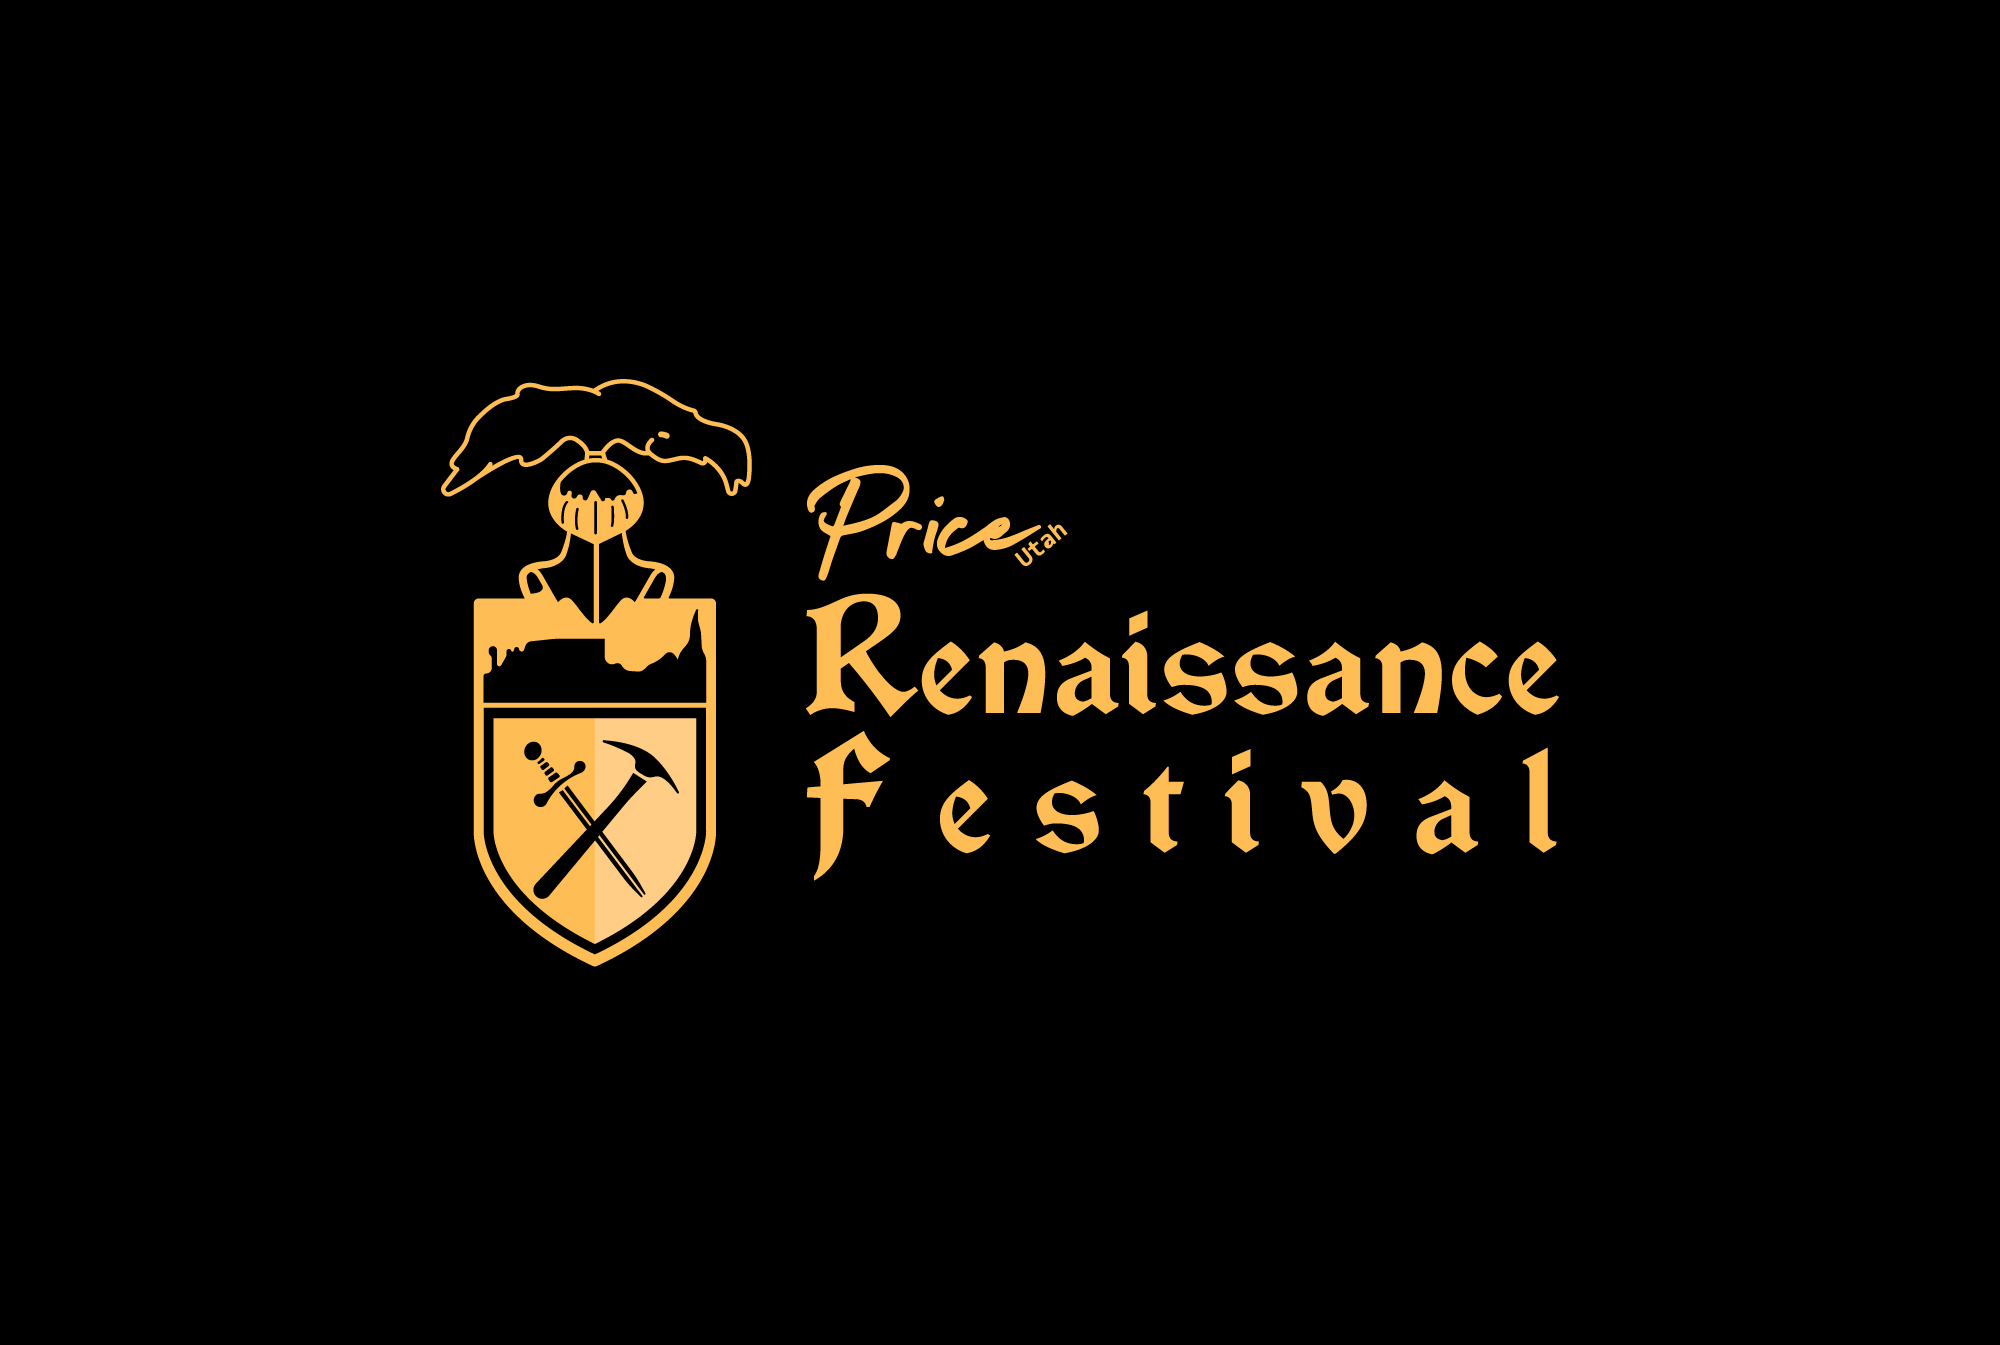 Renaissance Festival - Dungeons & Dragons